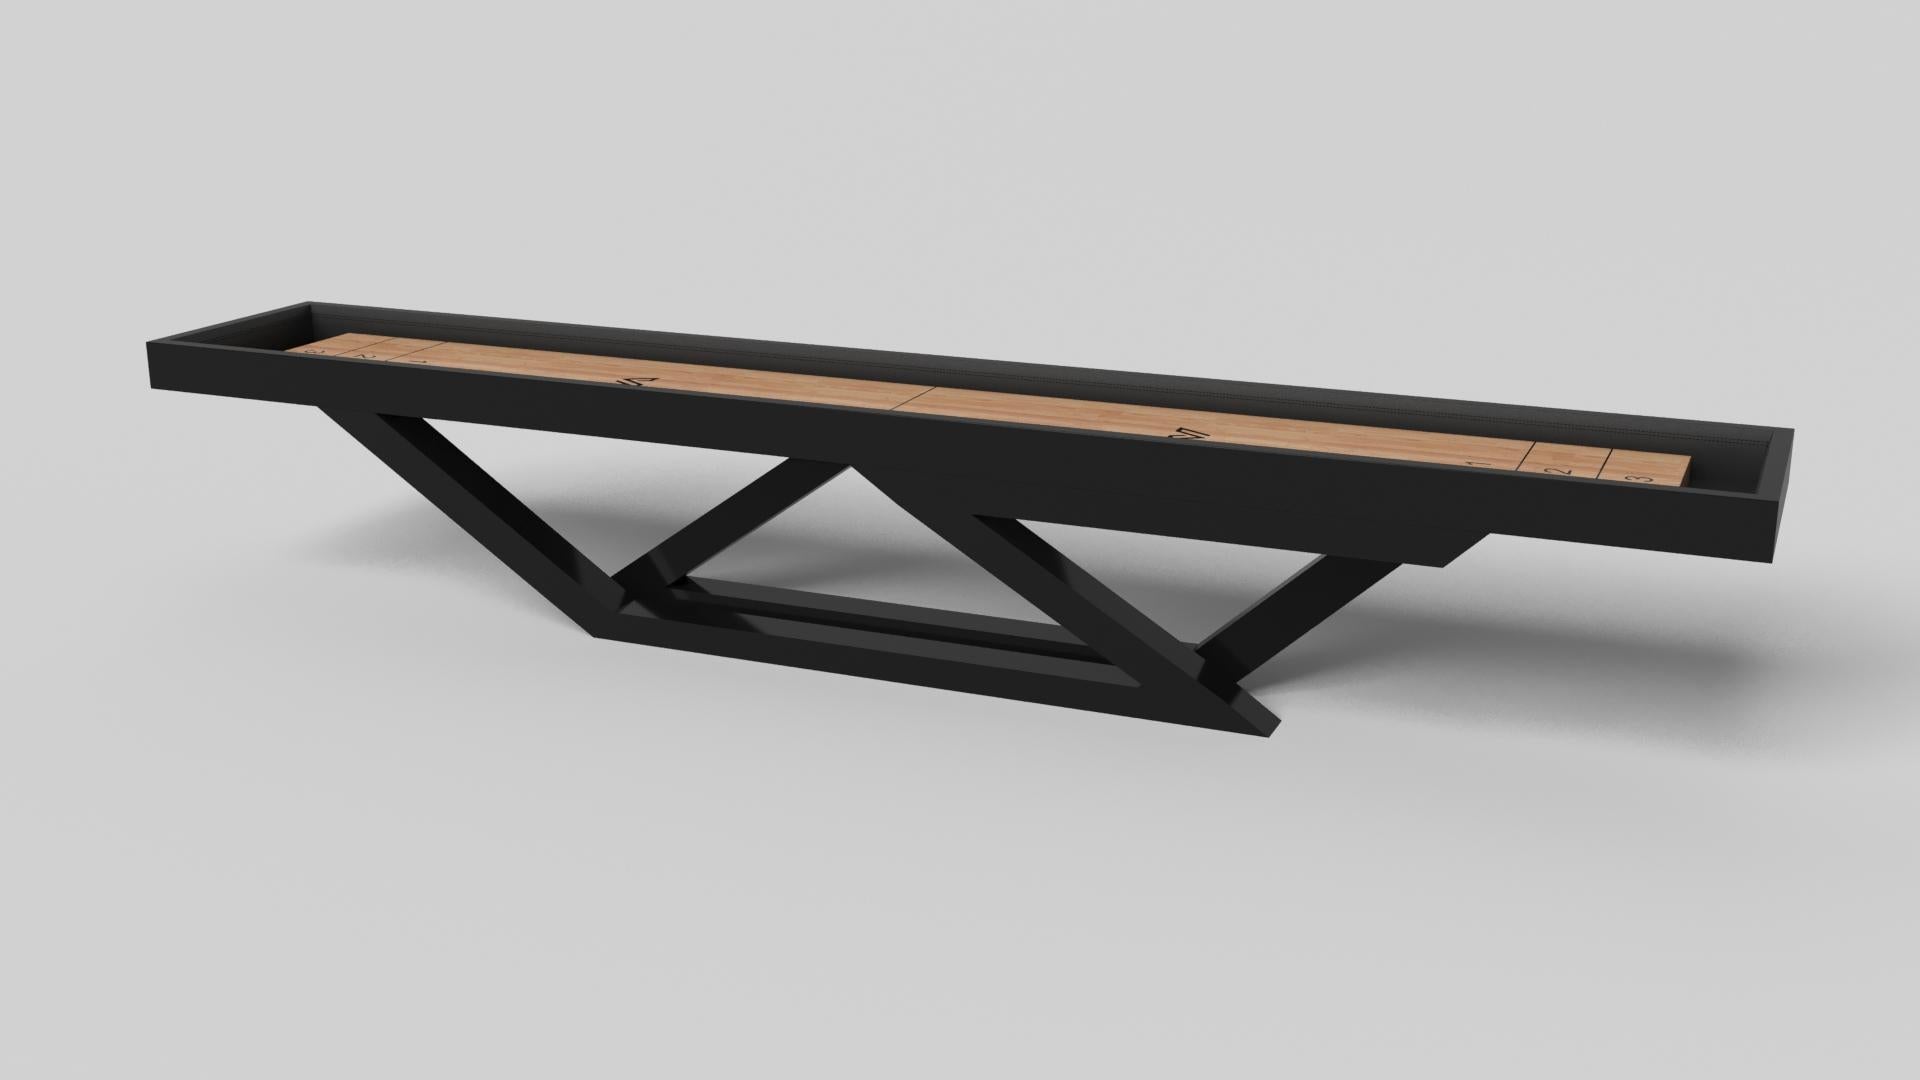 Der Trinity Shuffleboard-Tisch aus schwarzem Chrom mit rotem Akzent ist eine zeitgemäße Komposition aus klaren Linien und schlanken Kanten und ist ein eleganter Ausdruck modernen Designs. Dieser handgefertigte und detaillierte Tisch mit einer